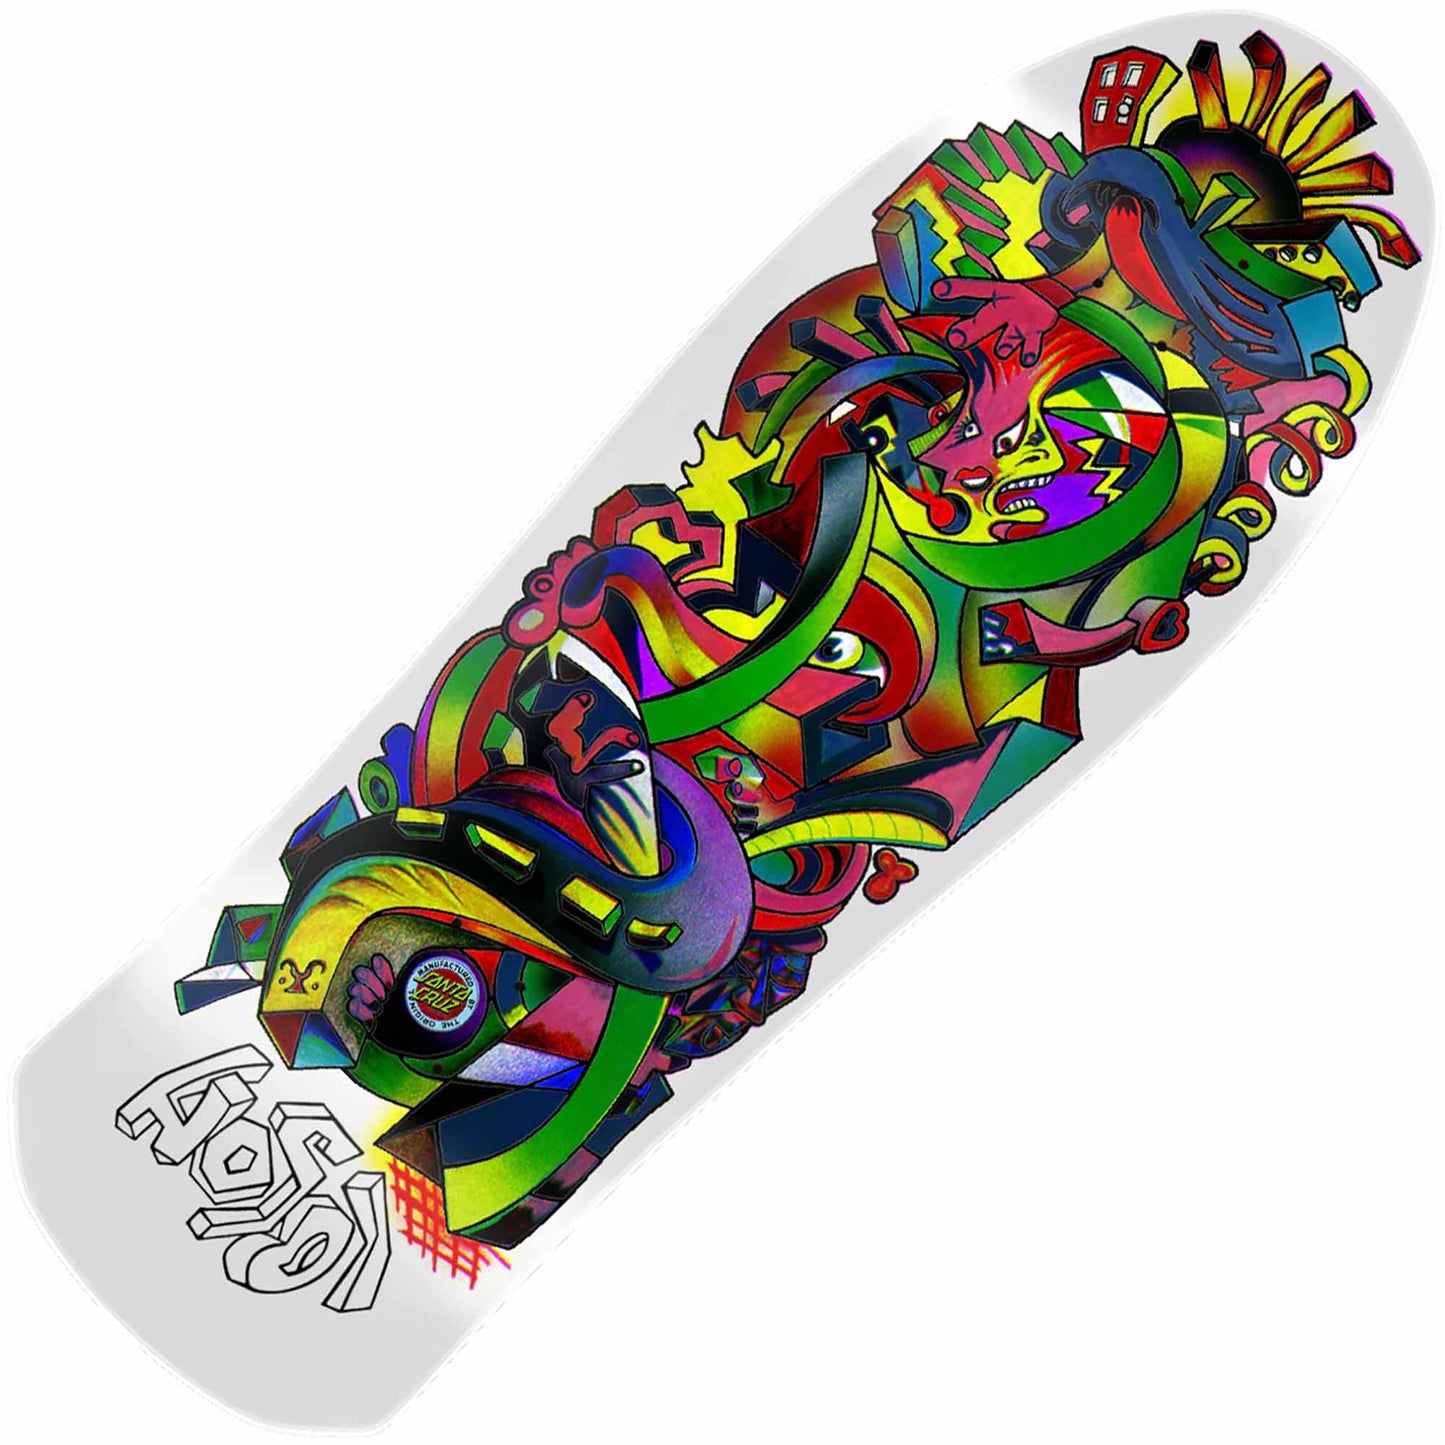 Santa Cruz Hosoi Picasso Reissue Deck (10.26" X 30.42") - Tiki Room Skateboards - 1